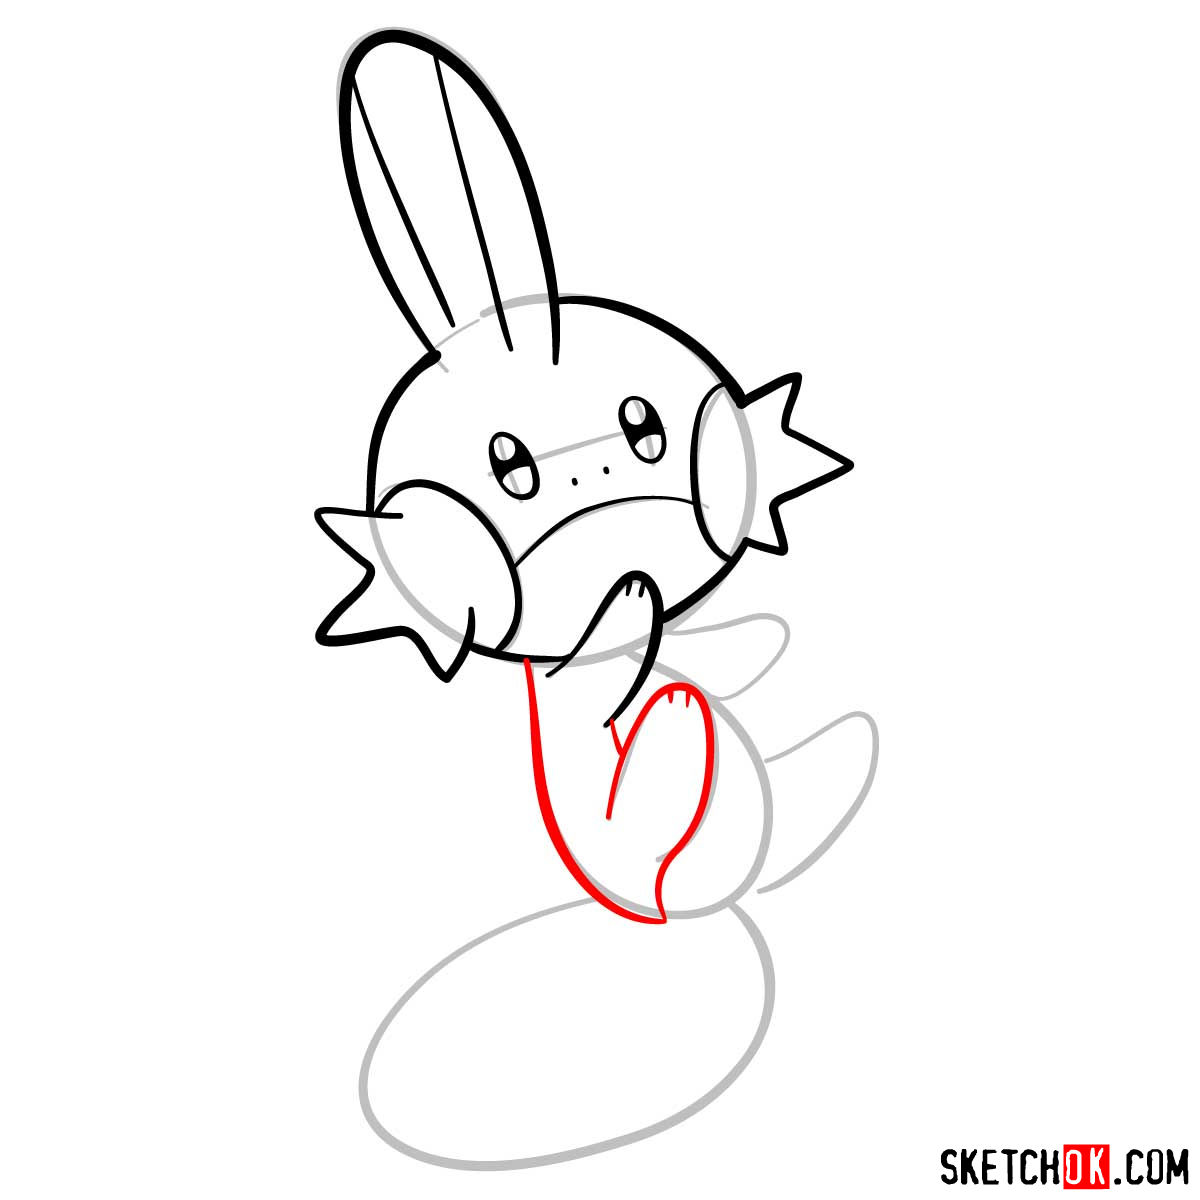 How to draw Mudkip pokemon - step 06